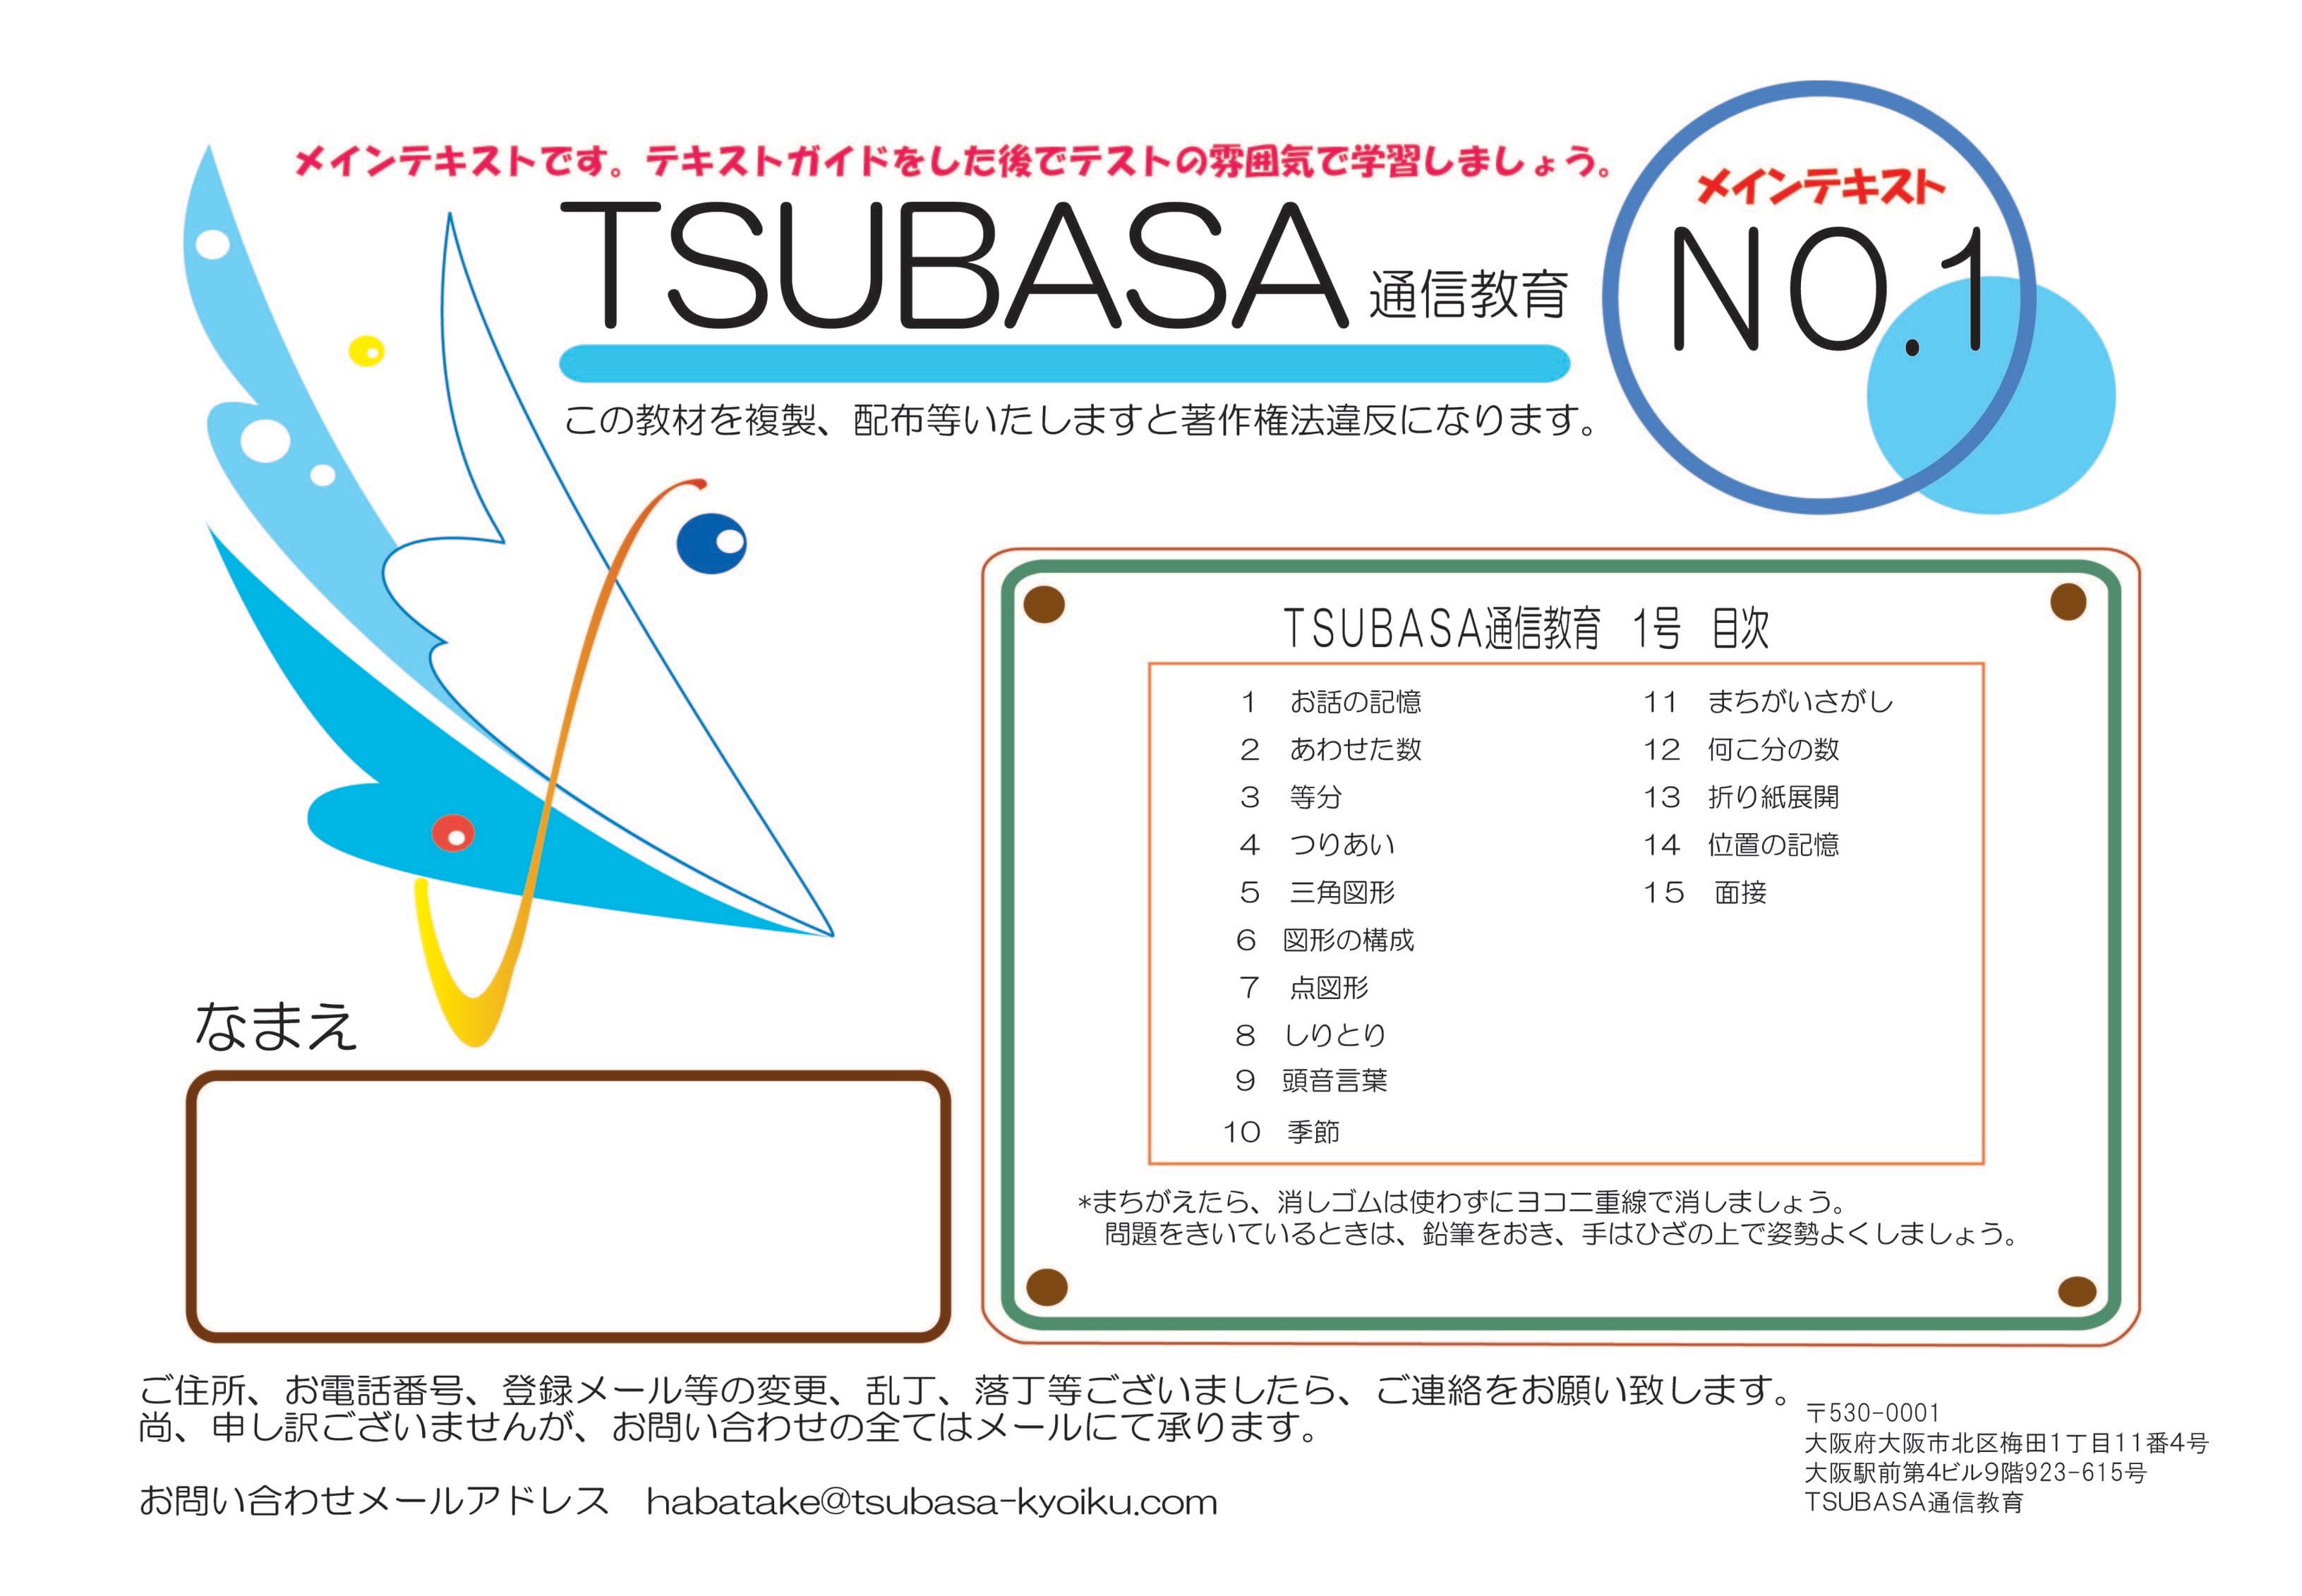 Tsubasa 通信教育